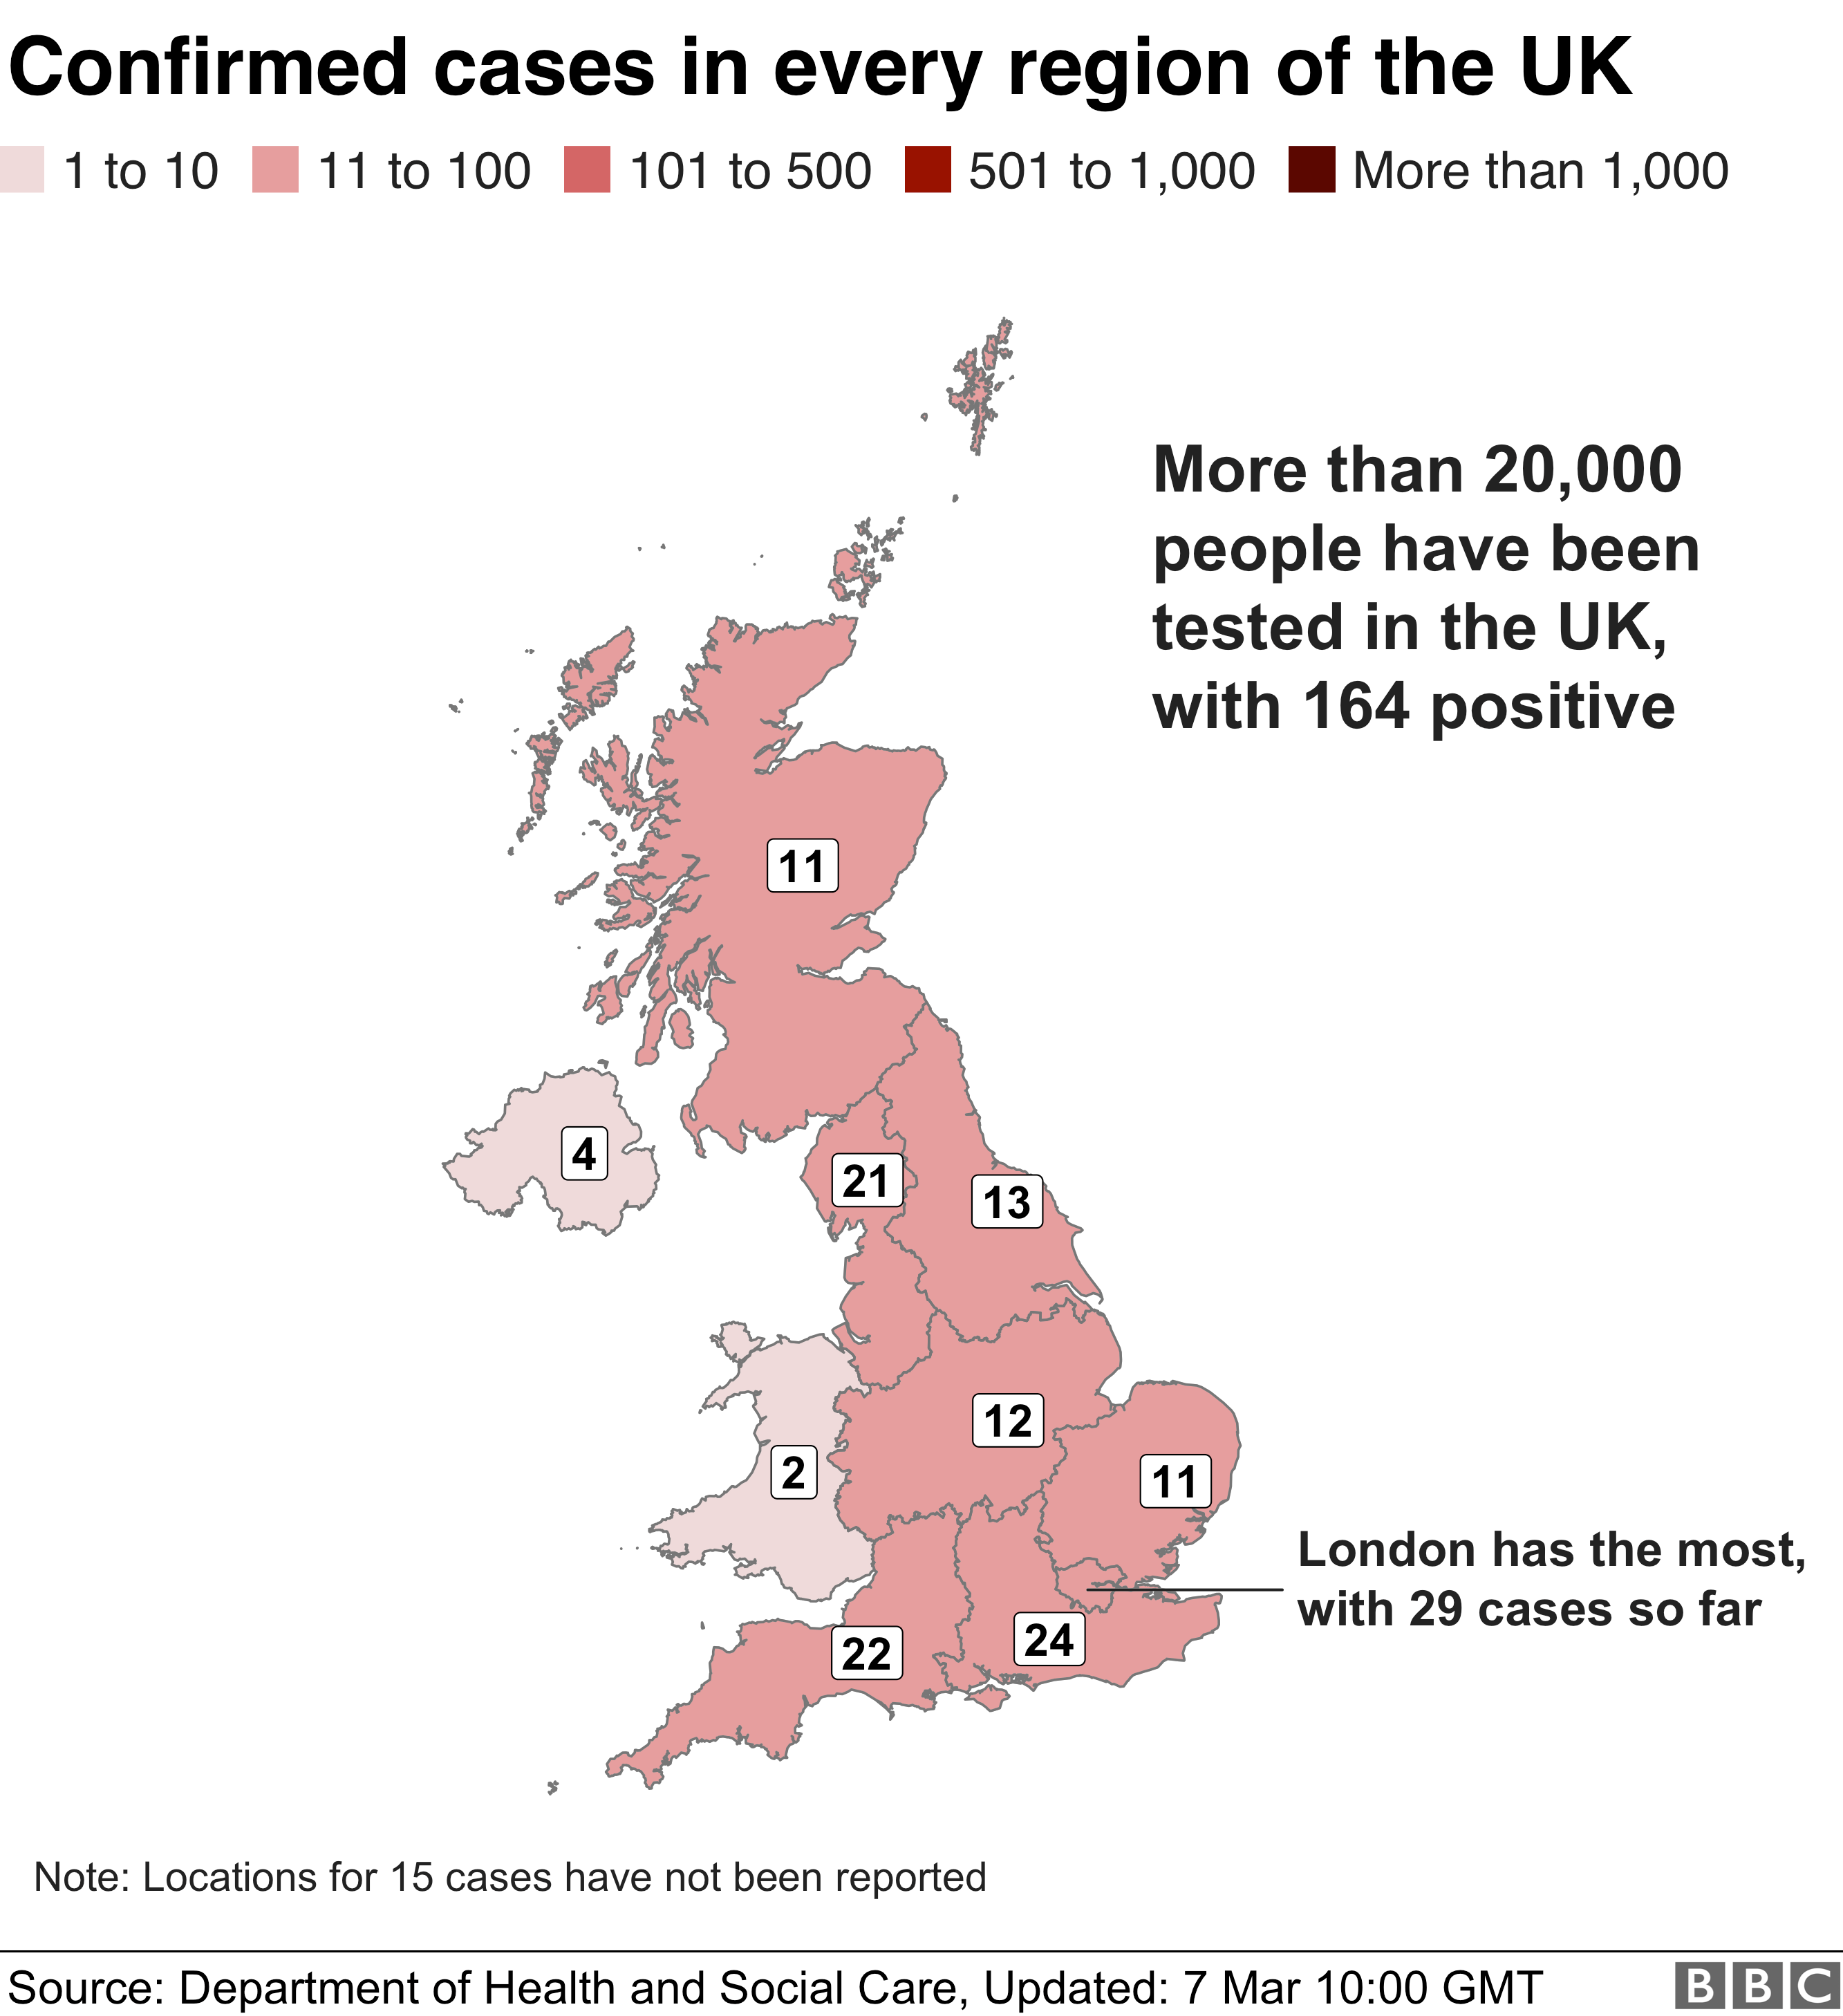 Карта показывает подтвержденные случаи заболевания по всей Великобритании, в Лондоне больше всего - 29